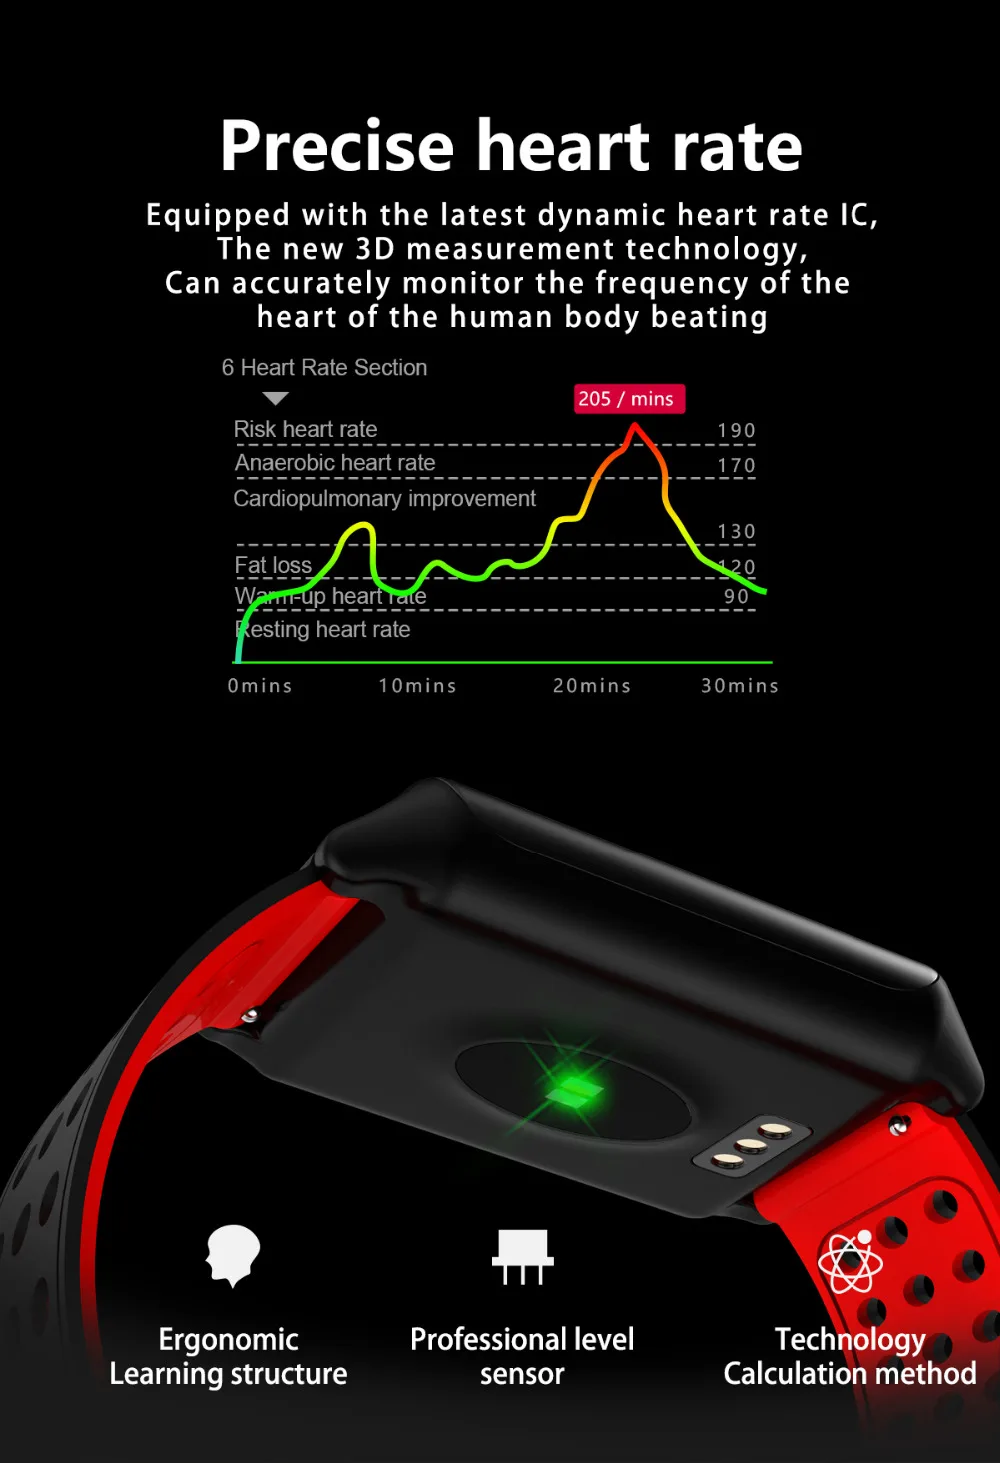 M7 Смарт-часы Водонепроницаемый Цвет Экран крови Давление монитор сердечного ритма Шагомер Смарт-браслет Сеть 2G